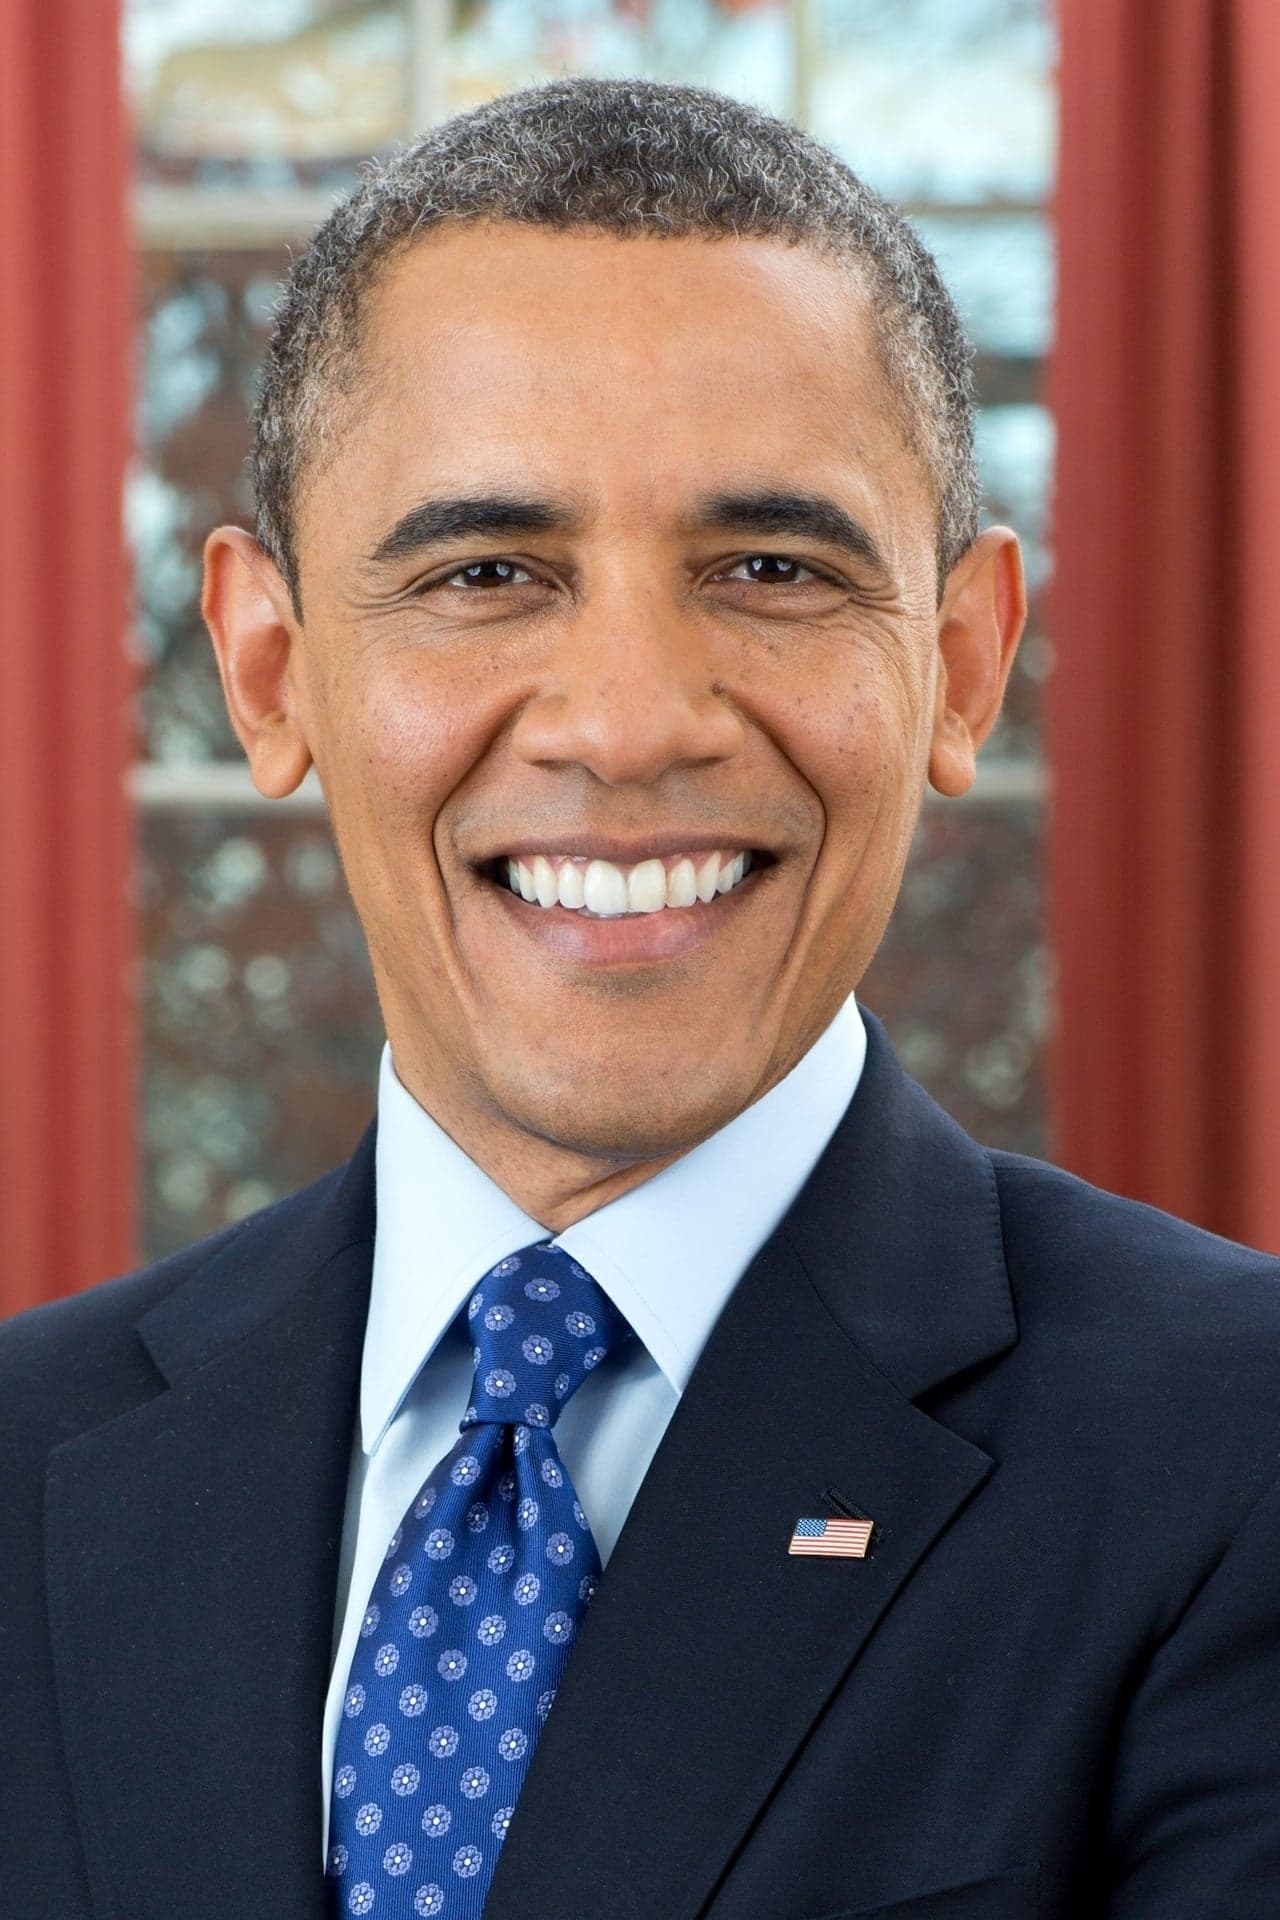 Barack Obama | Self - Former President (uncredited)